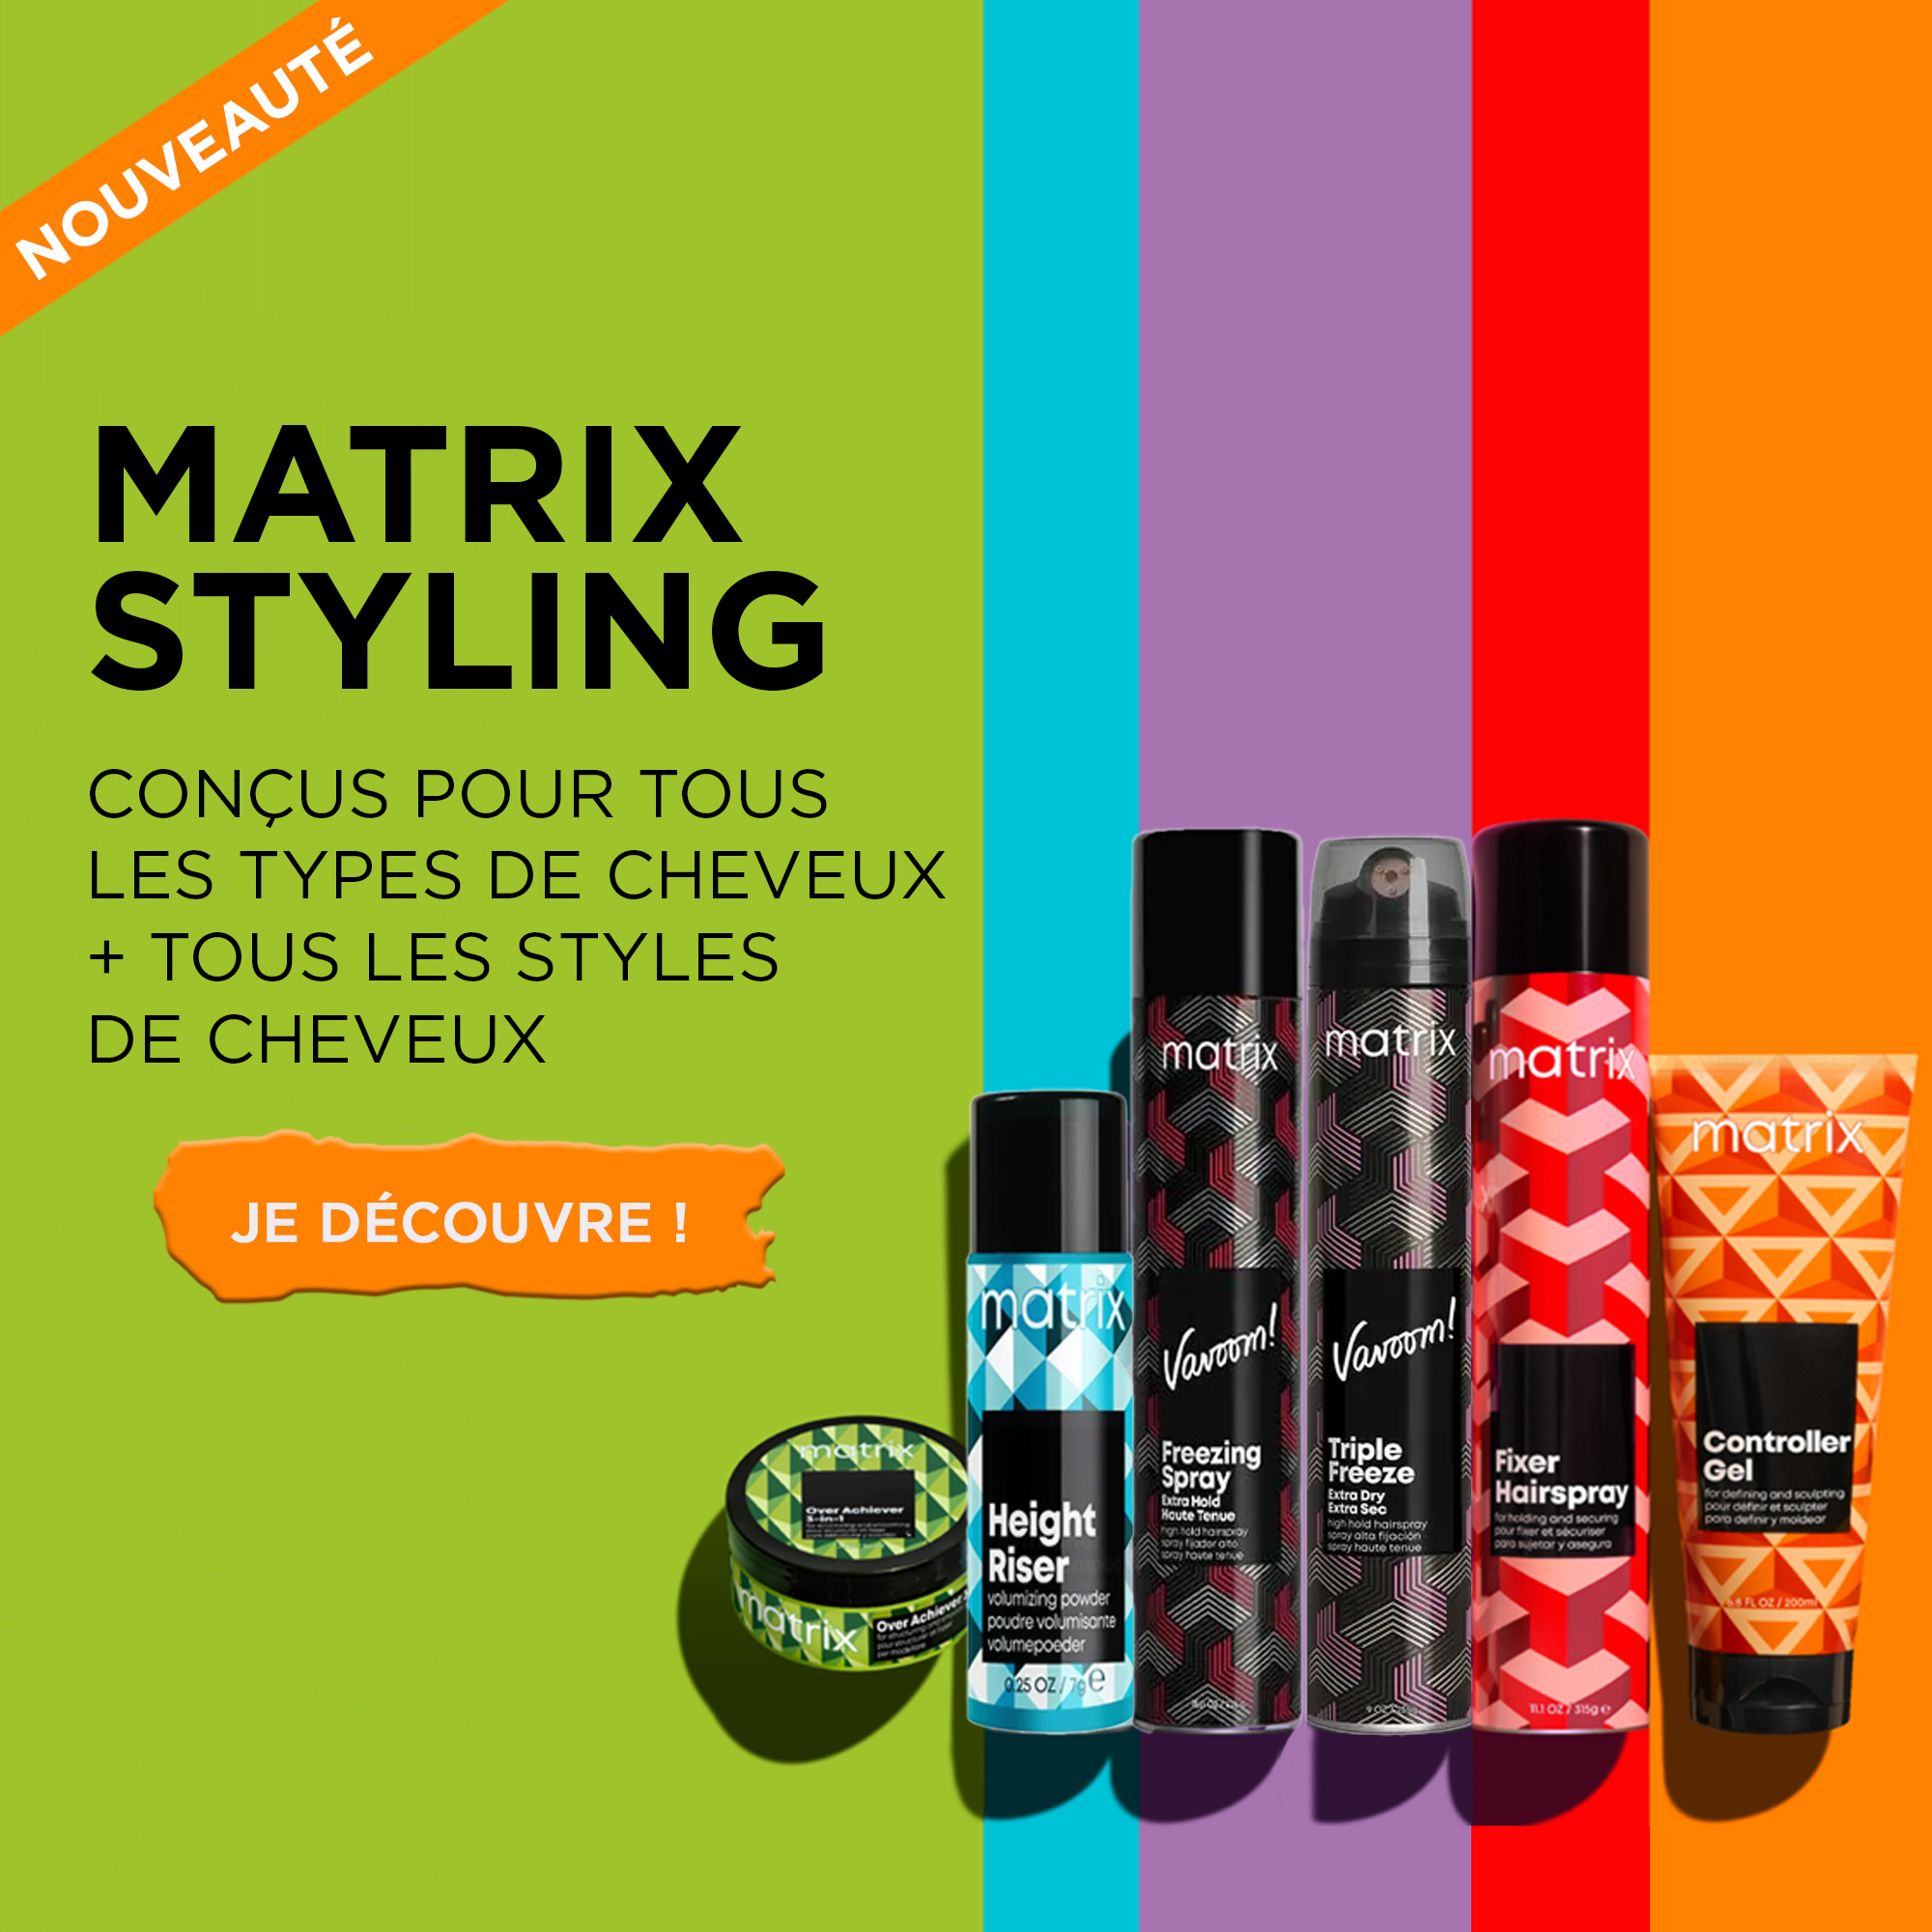 Découvrez la nouvelle collection de coiffants Matrix Styling pour tous les types de cheveux